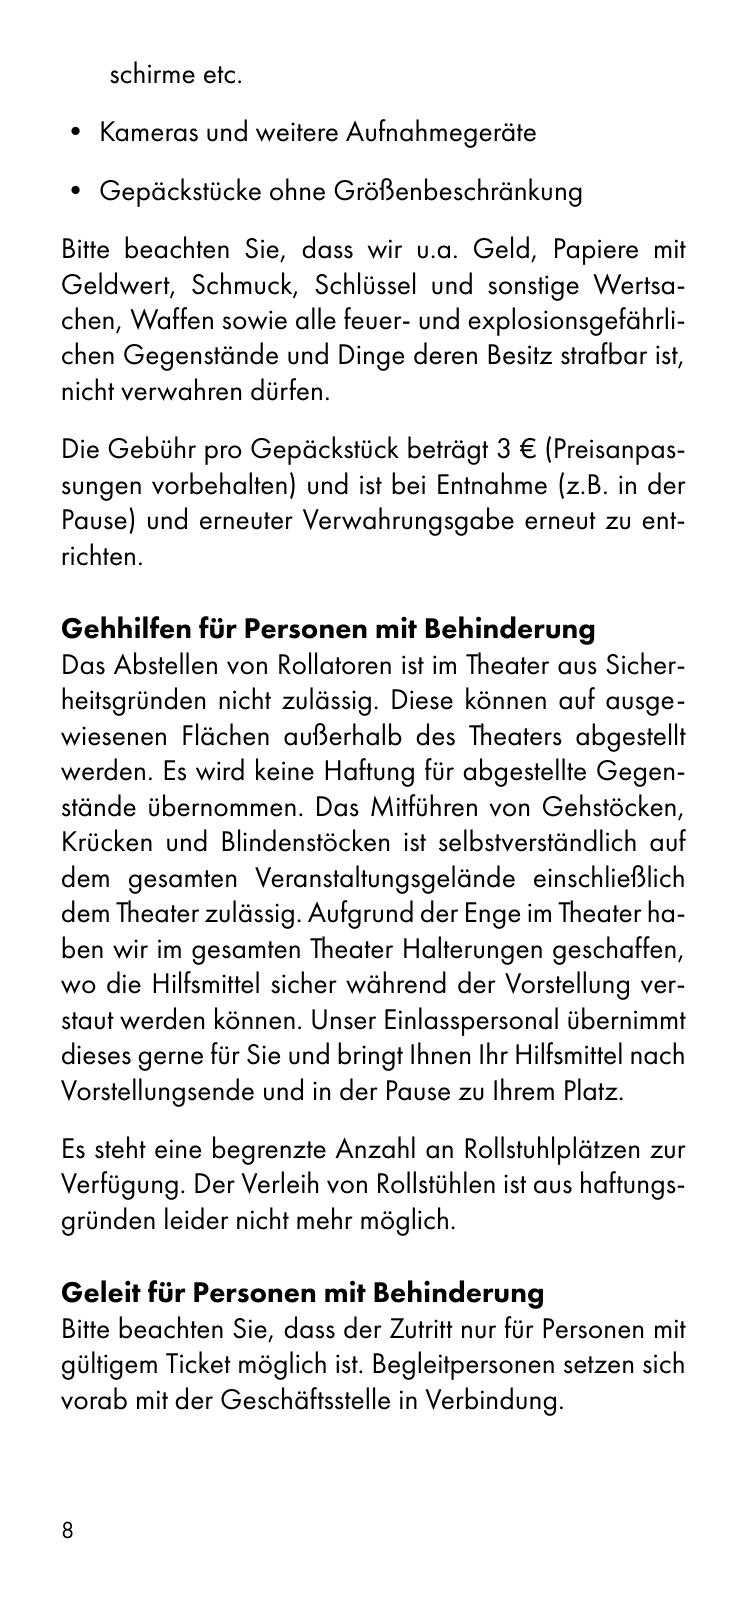 Vorschau Besucherinformation - Ticket only 24.08. Seite 8